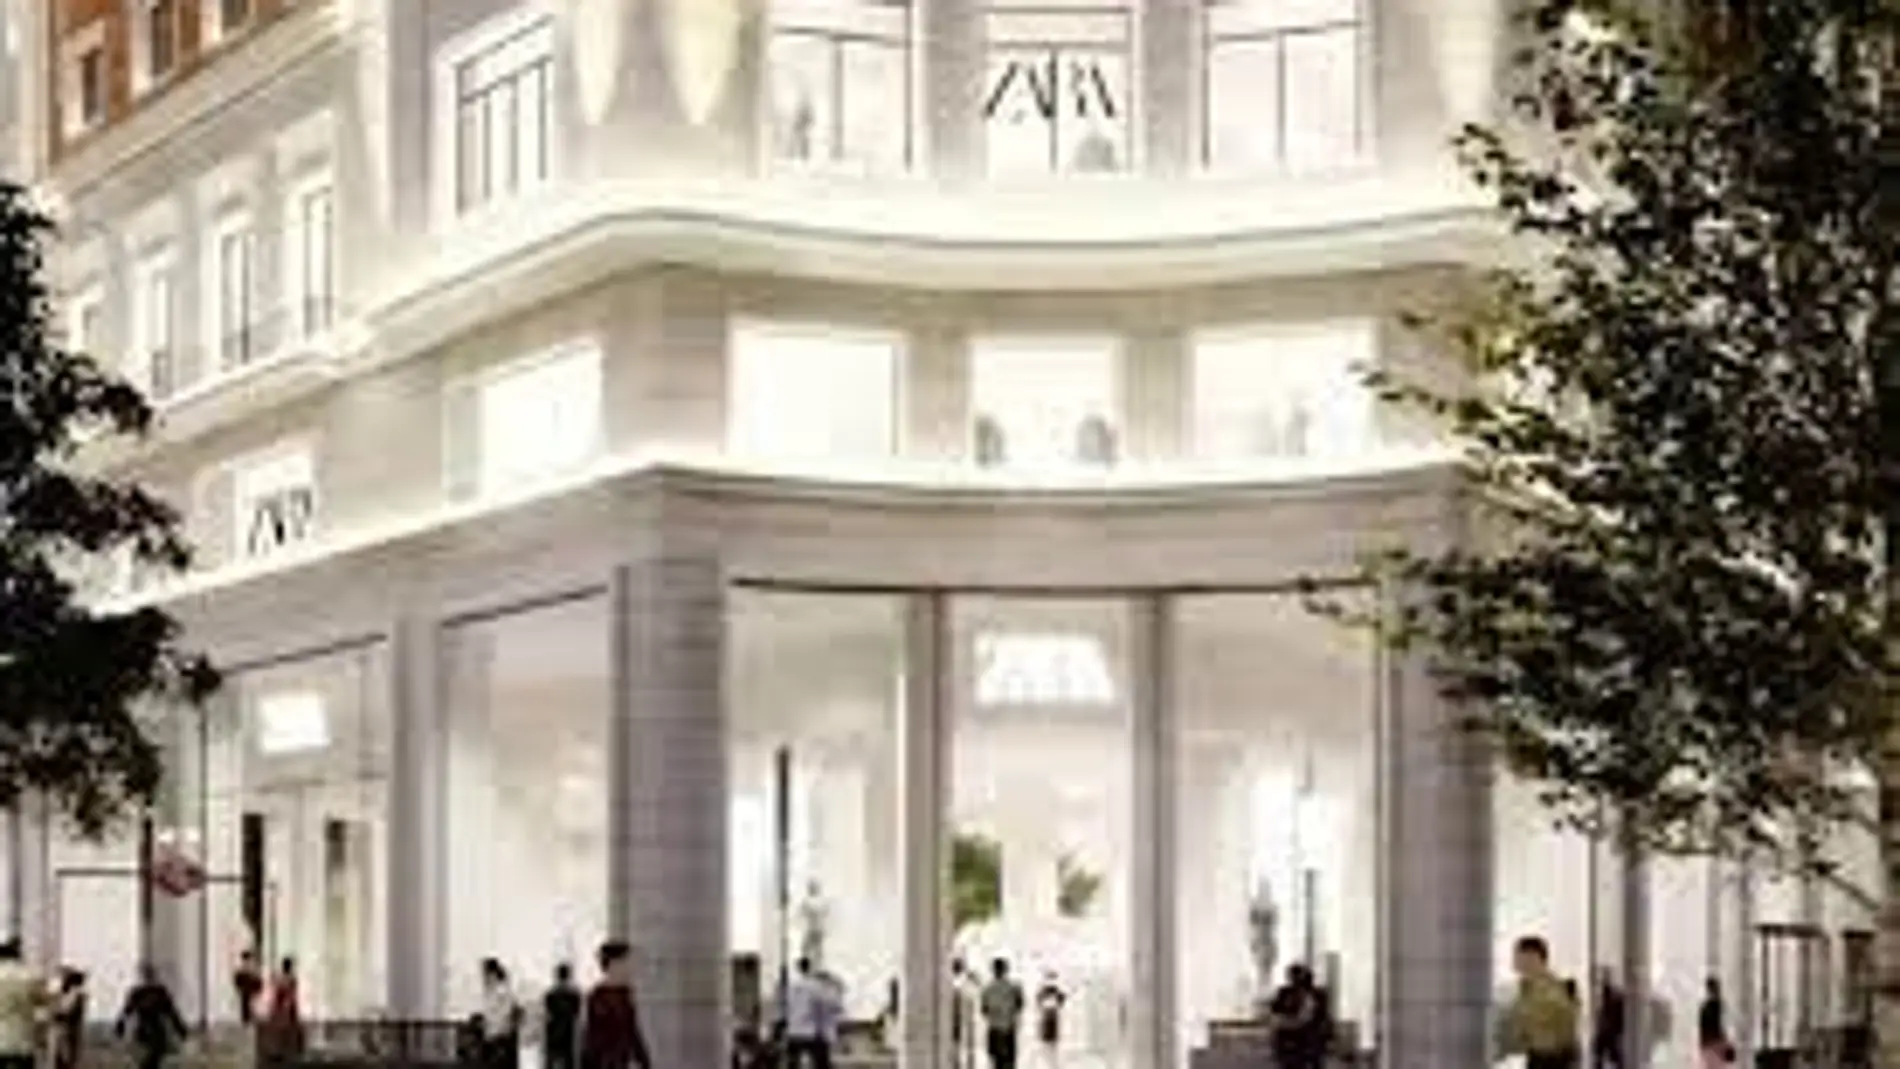 El Zara más grande del mundo estará en Madrid